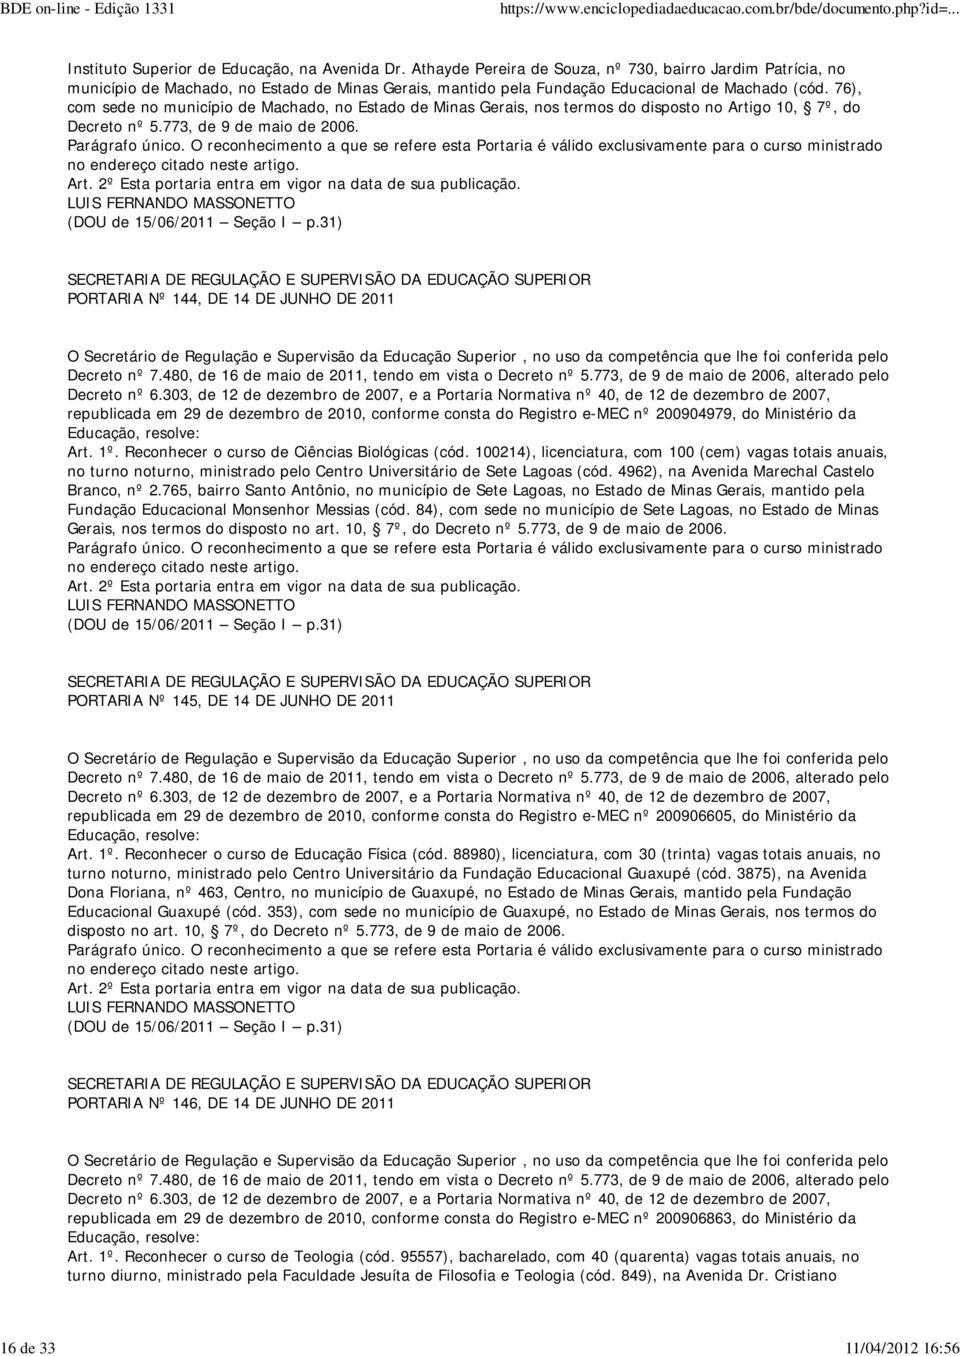 76), com sede no município de Machado, no Estado de Minas Gerais, nos termos do disposto no Artigo 10, 7º, do Decreto nº 5.773, de 9 de maio de 2006. (DOU de 15/06/2011 Seção I p.